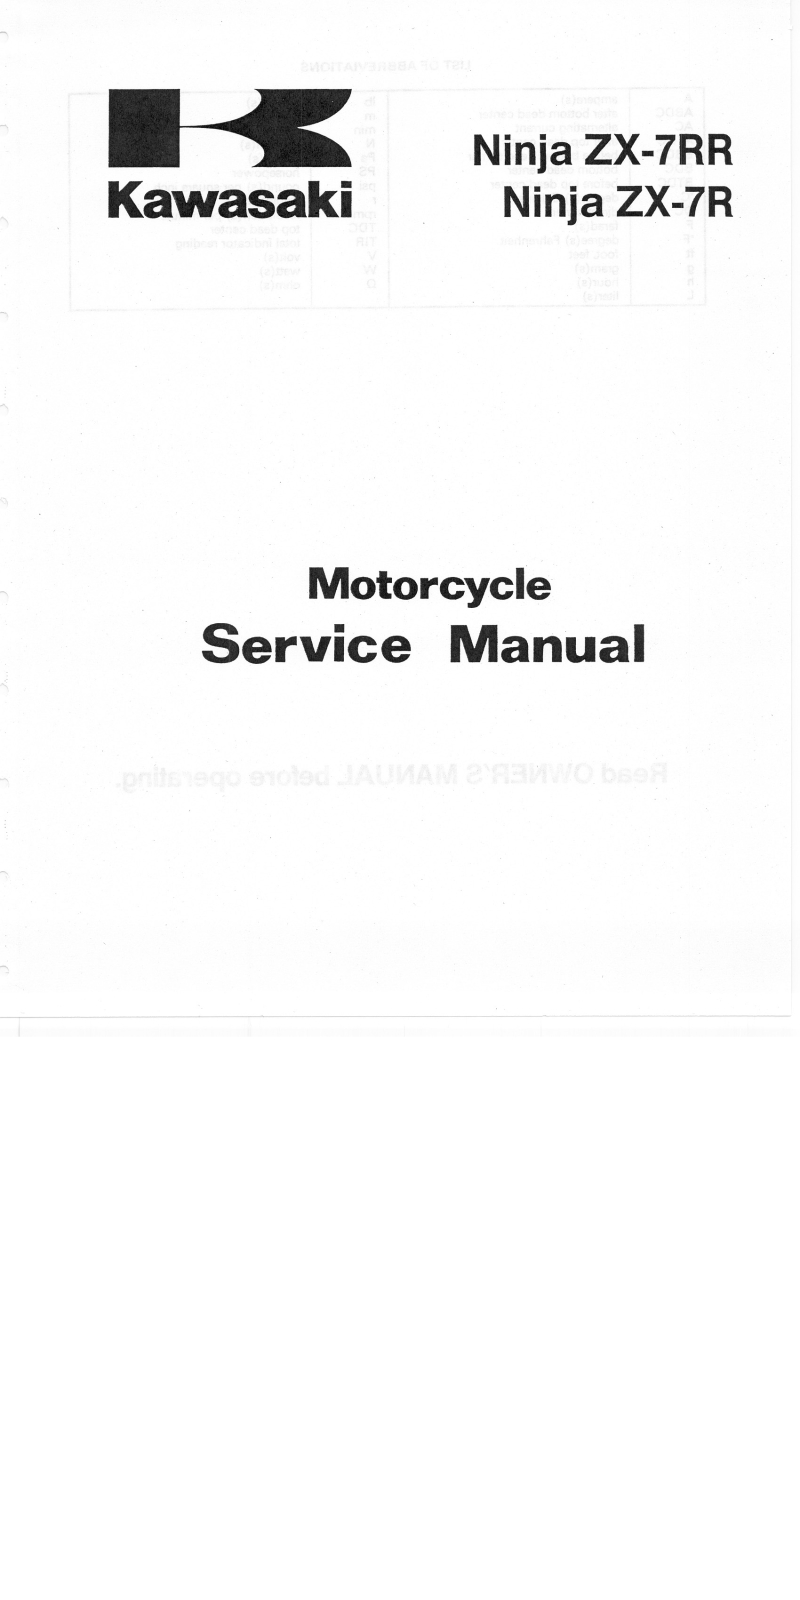 Kawasaki Ninja ZX7R, Ninja ZX7RR 1996-2003 Service Manual